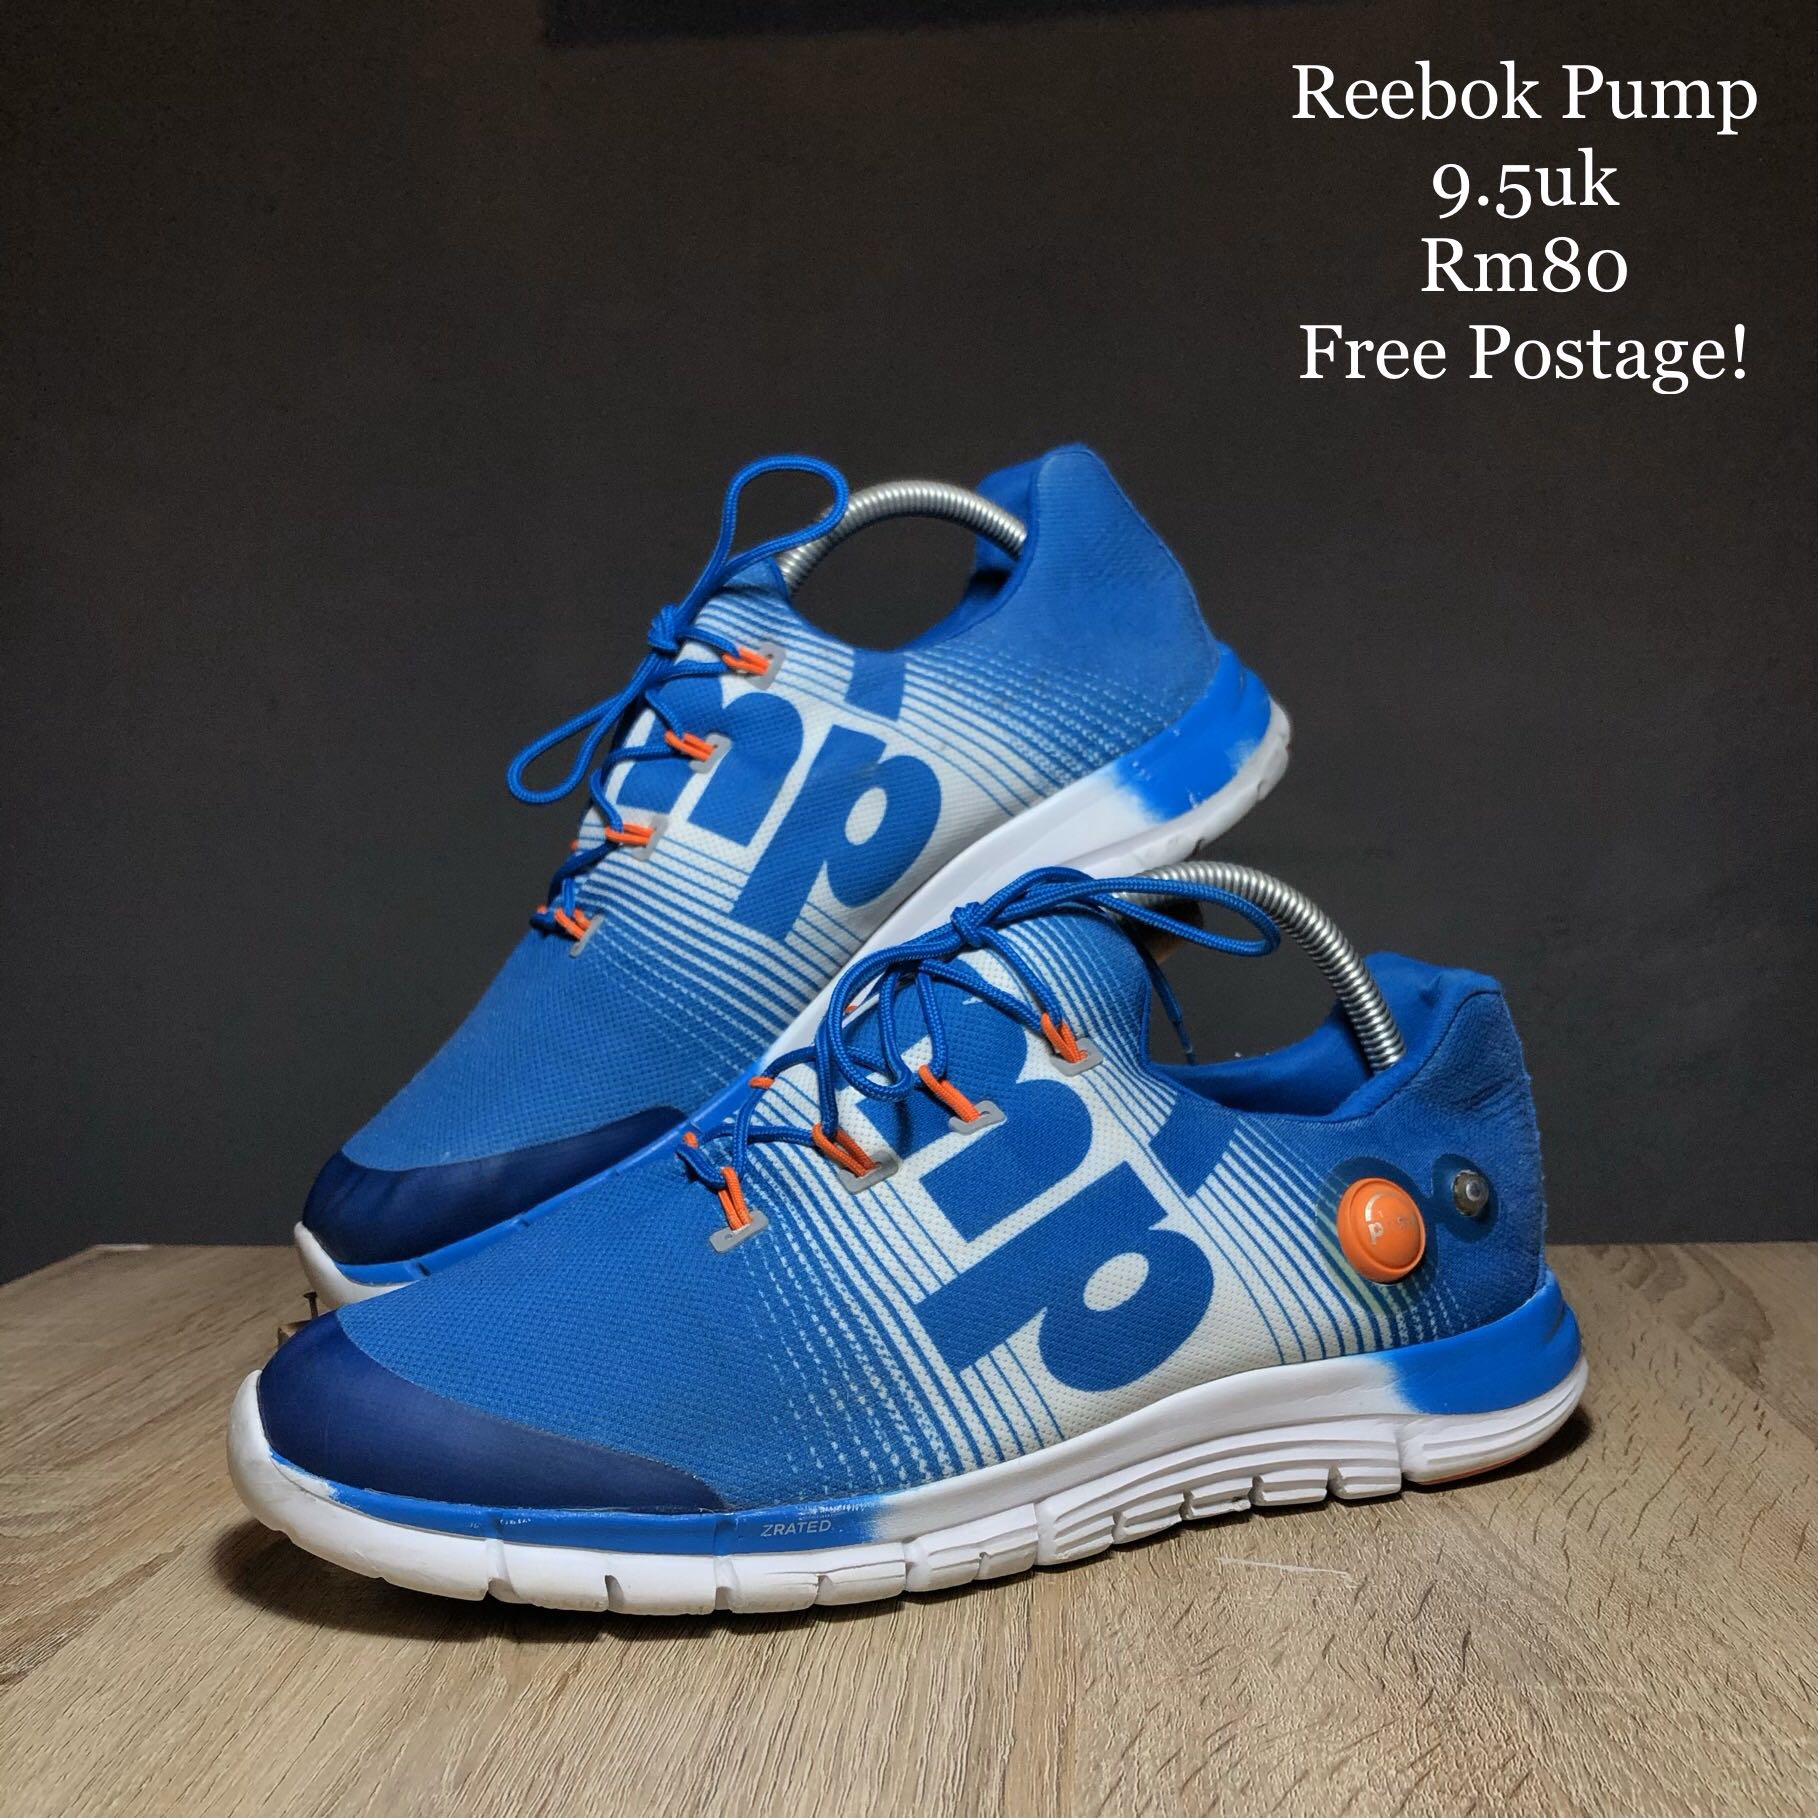 Reebok Pump, Men's Fashion, Footwear 